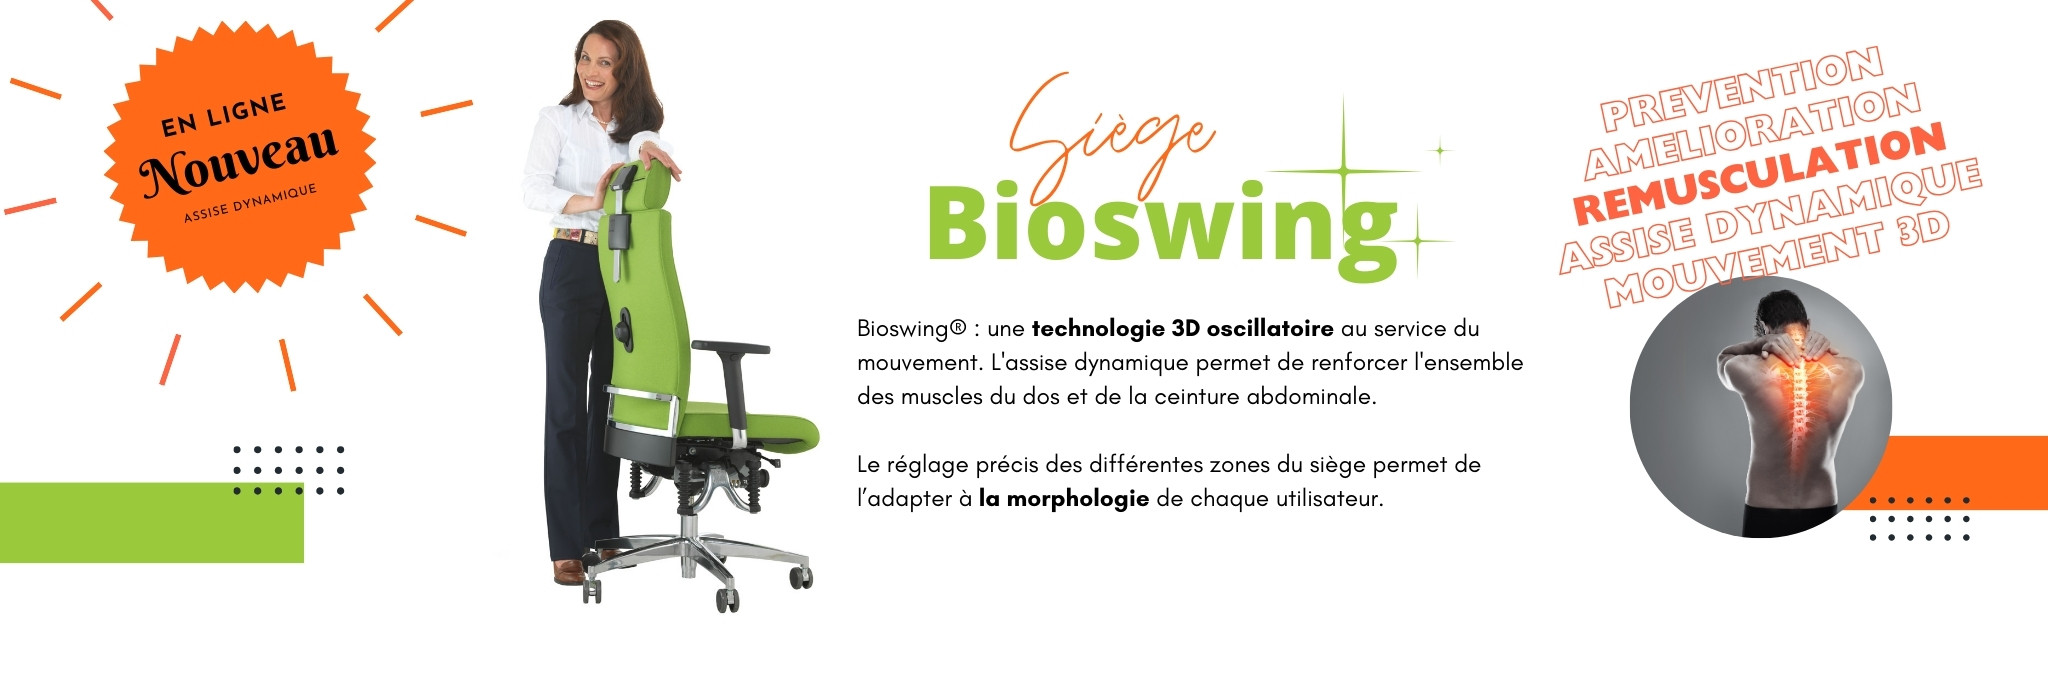 siège Bioswing